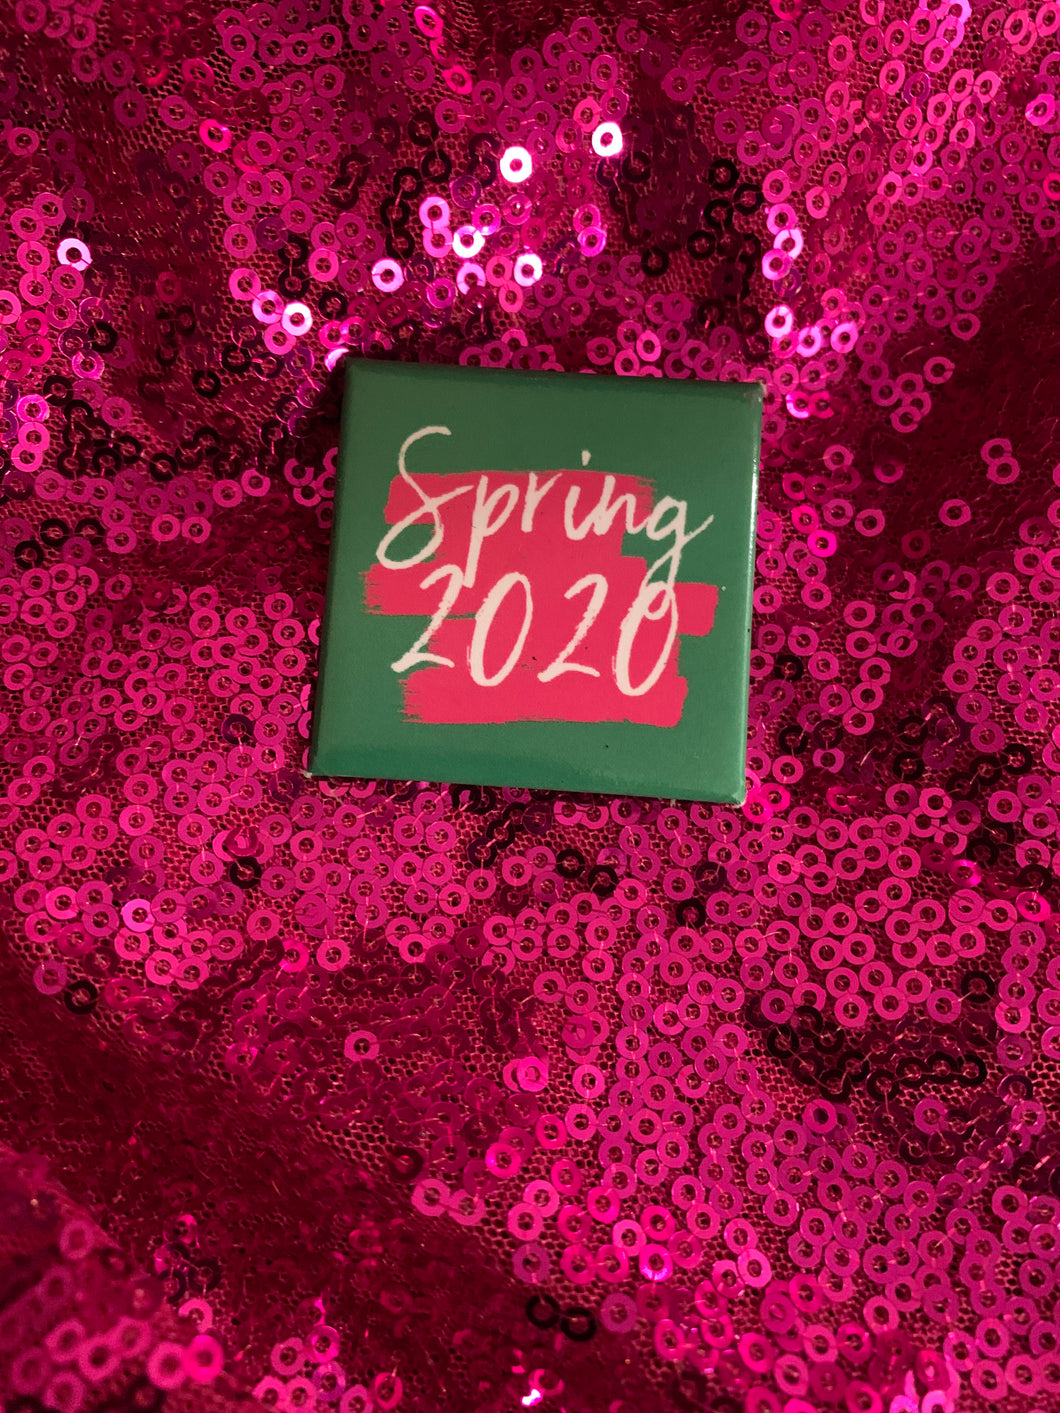 Pretty Spring 2020 Button